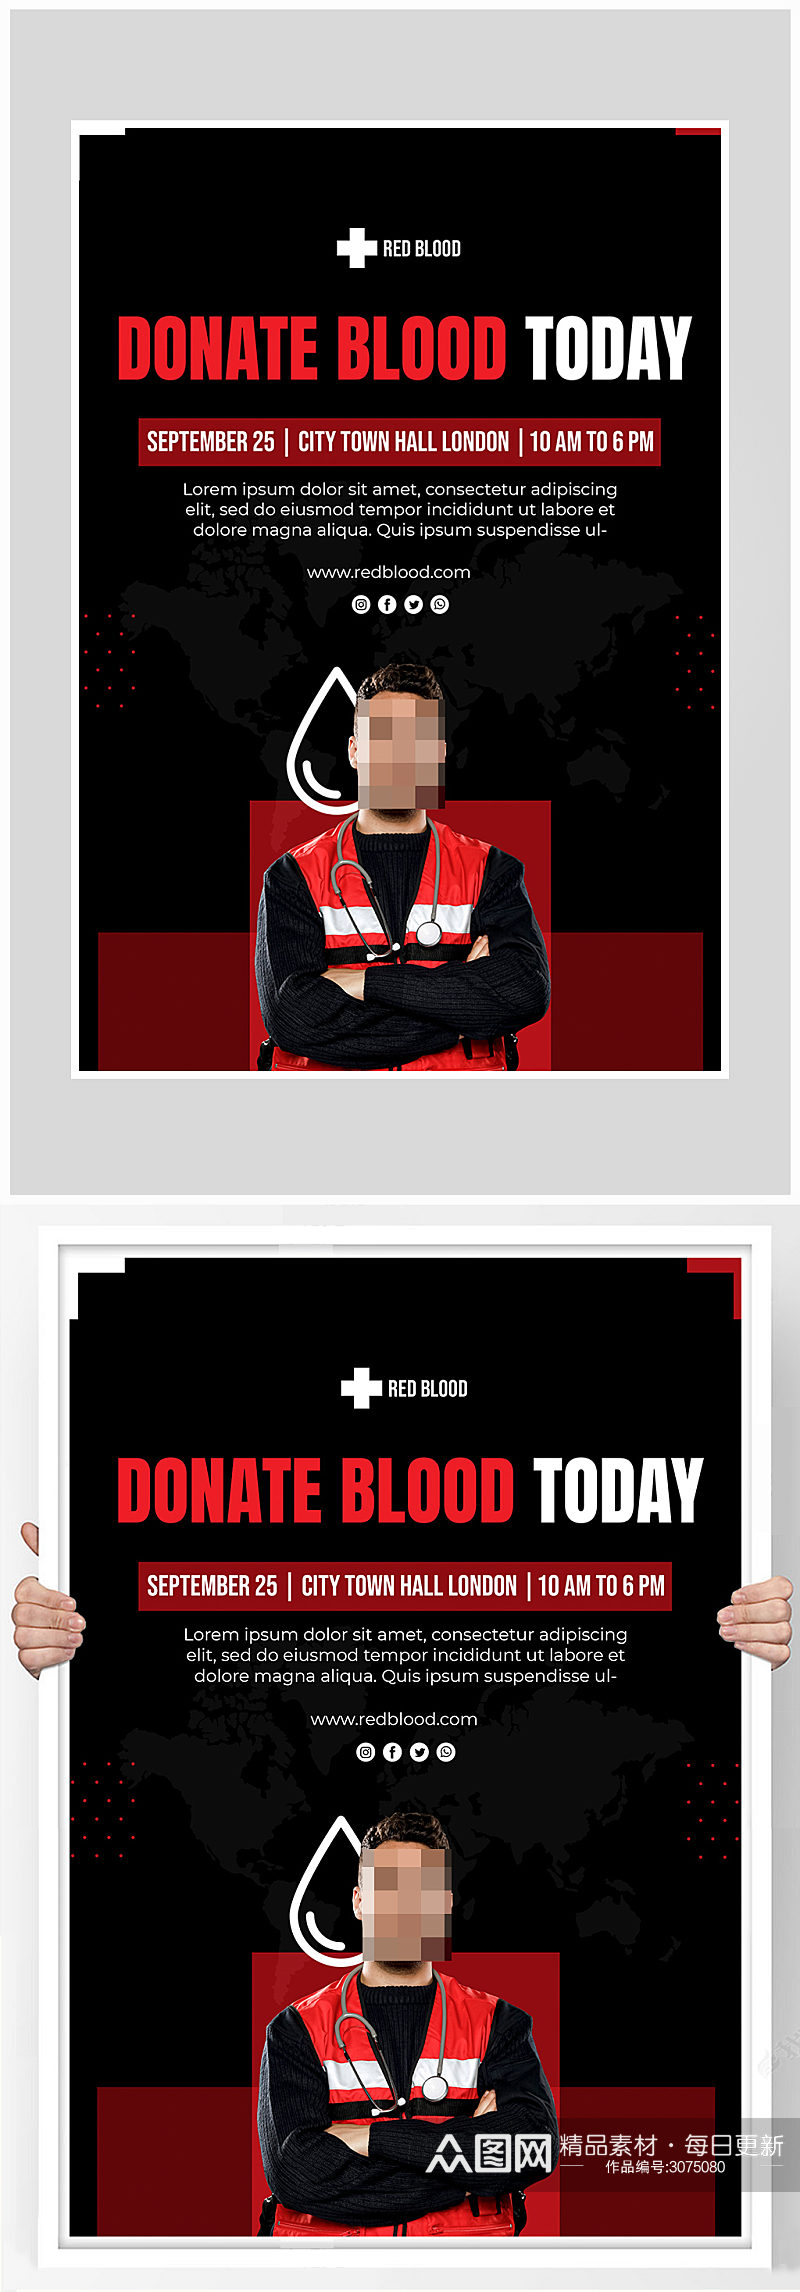 简约公益献血海报设计素材